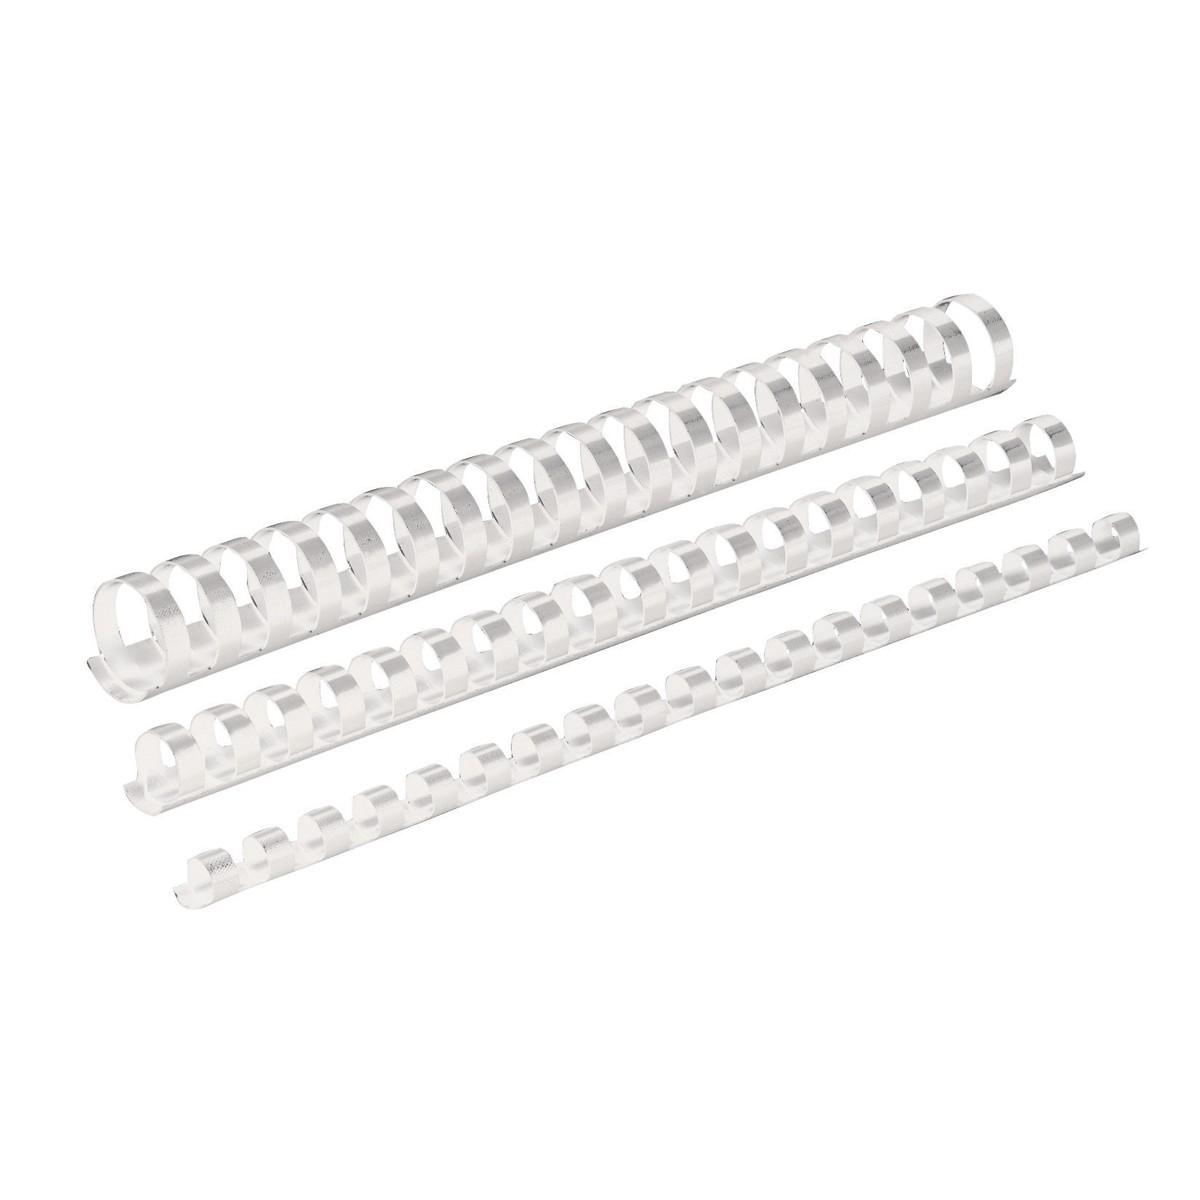 Dorsi plastici per rilegatura a 21 anelli - Colore bianco - Ø -mm- 12 - Note capacità fogli 56-80 - 